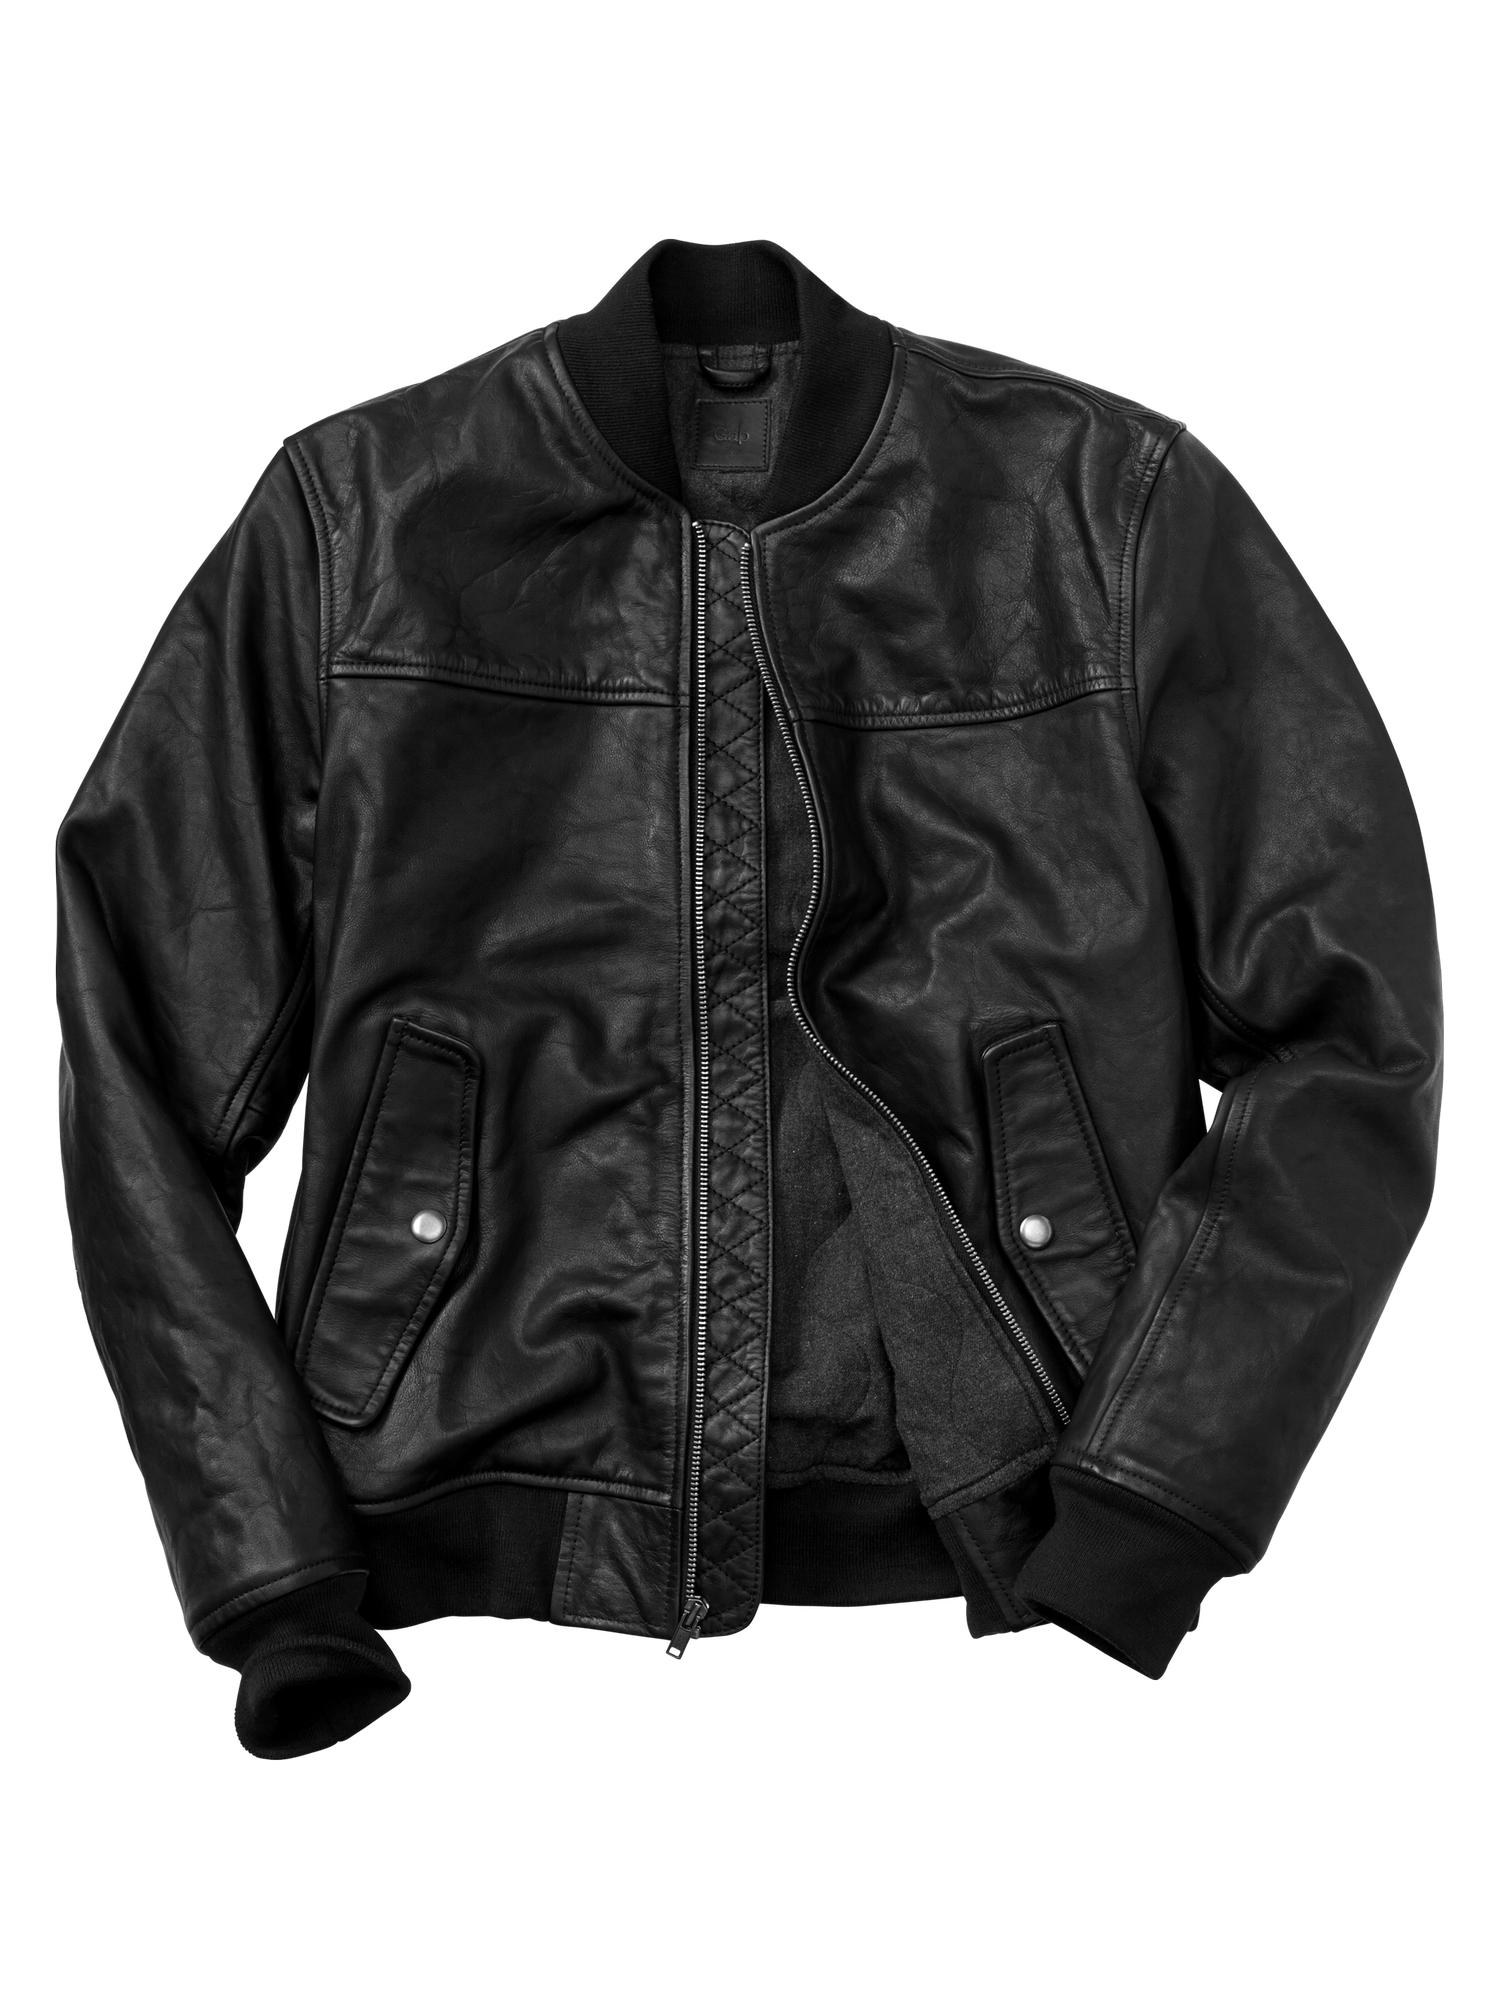 gap leather bomber jacket